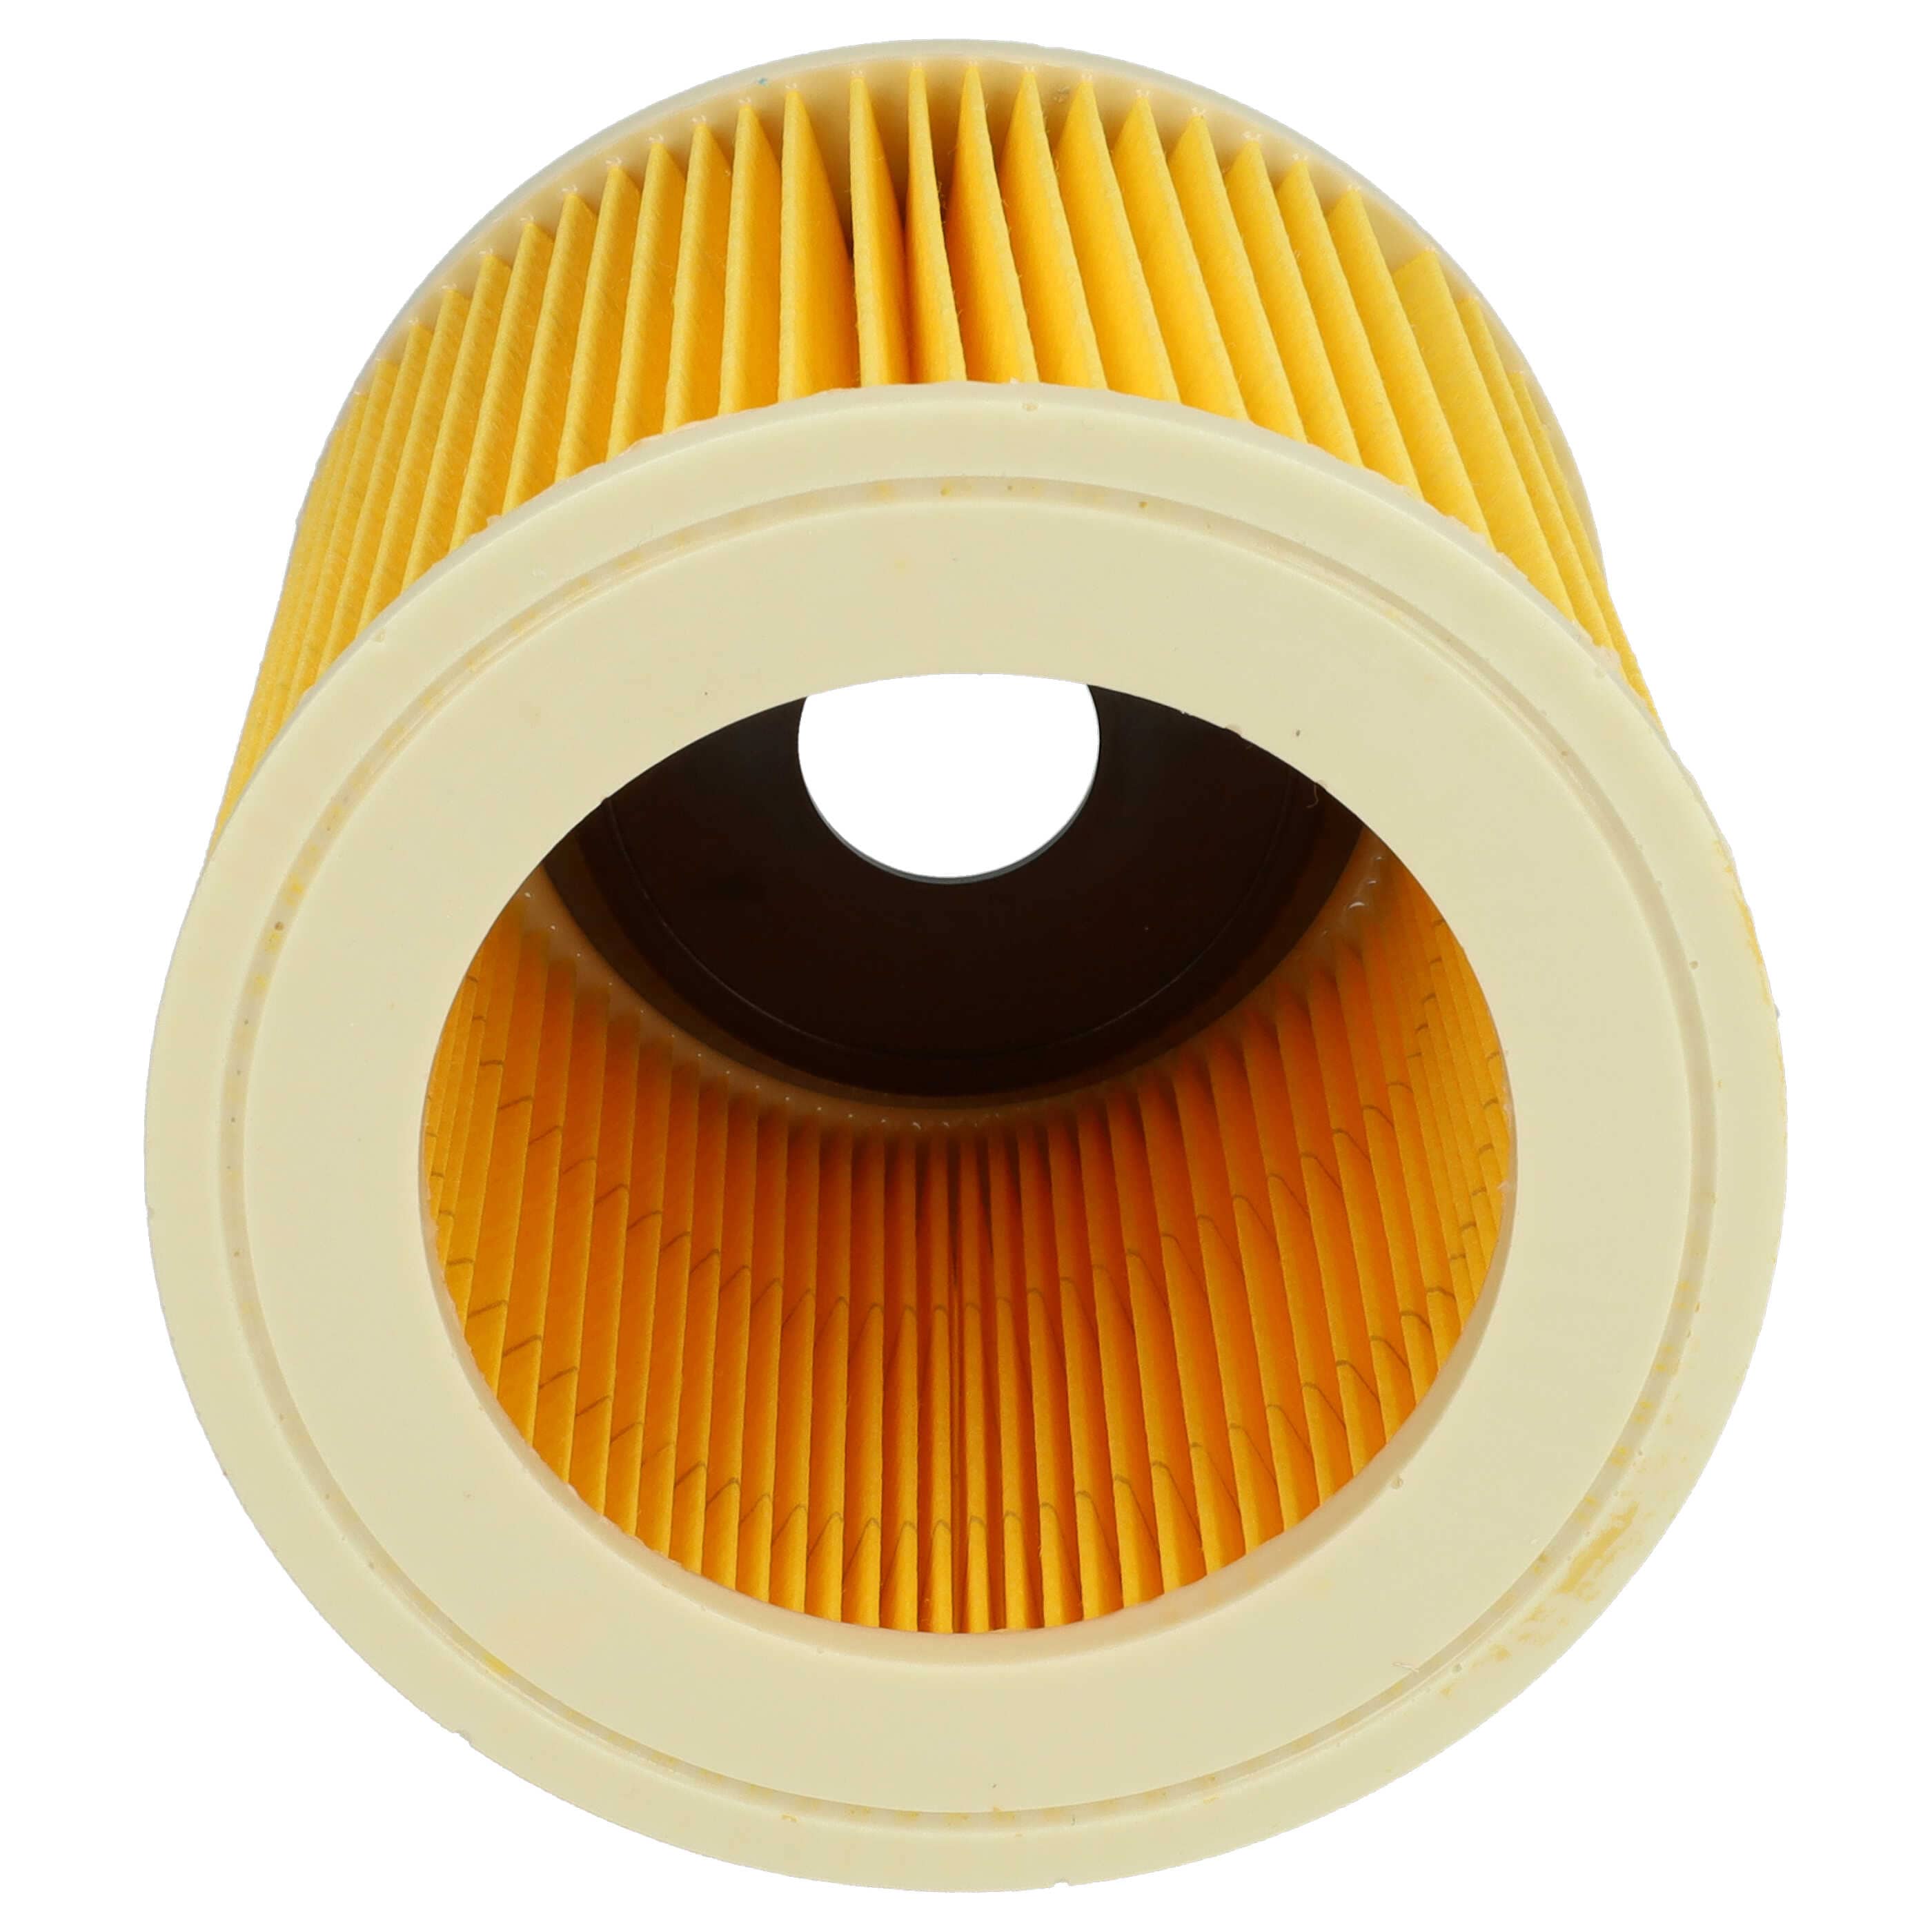 5x Filtr do odkurzacza Kärcher 6.414-552.0, 2.863-303.0 - wkład filtracyjny, żółty